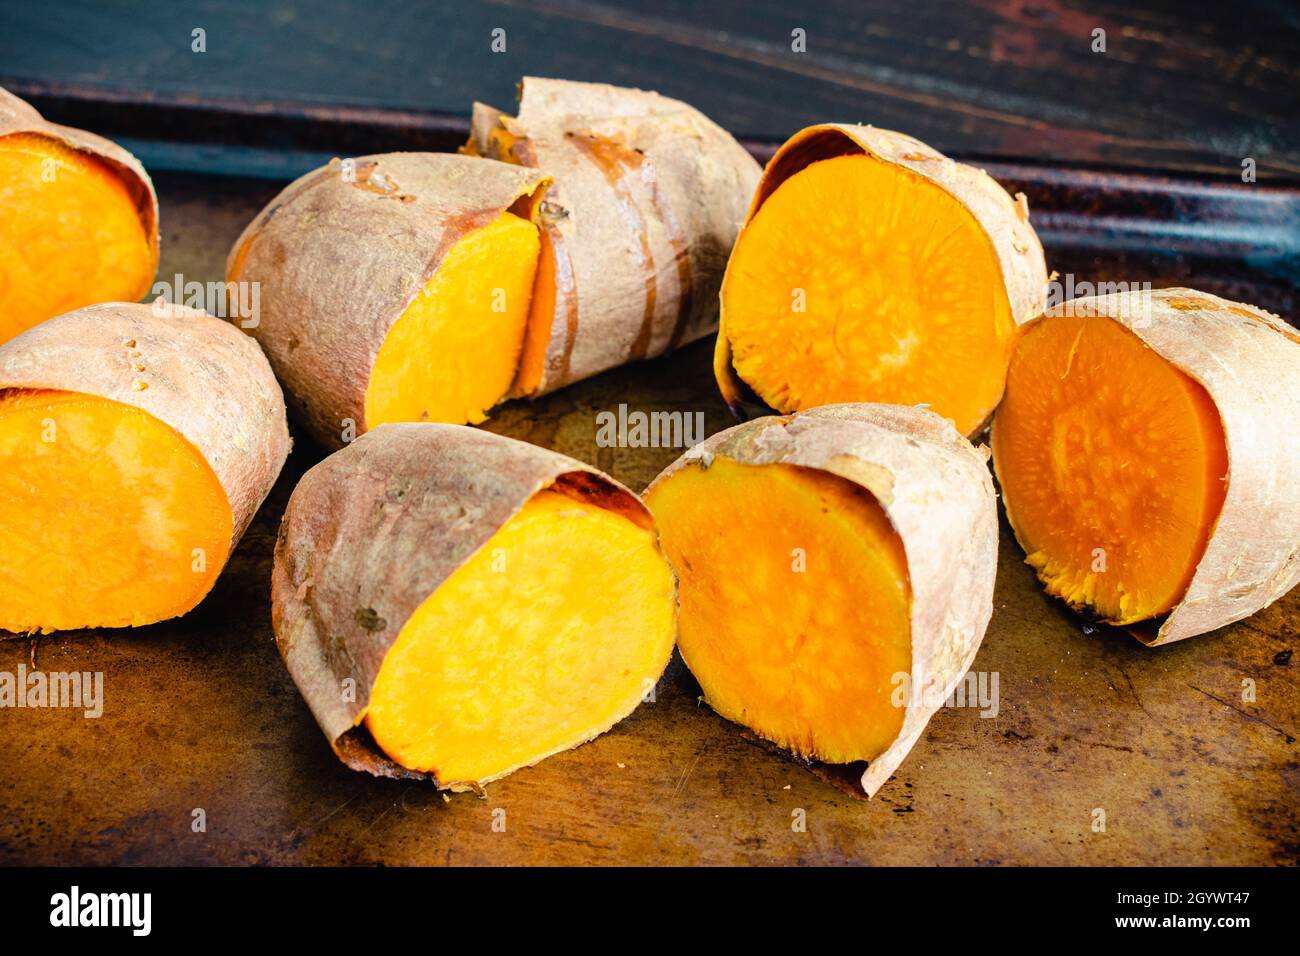 Halbierte gebackene Süßkartoffeln auf einem Blech Pfanne: Vier gebackene  Süßkartoffeln auf einem Backblech halbiert Stockfotografie - Alamy